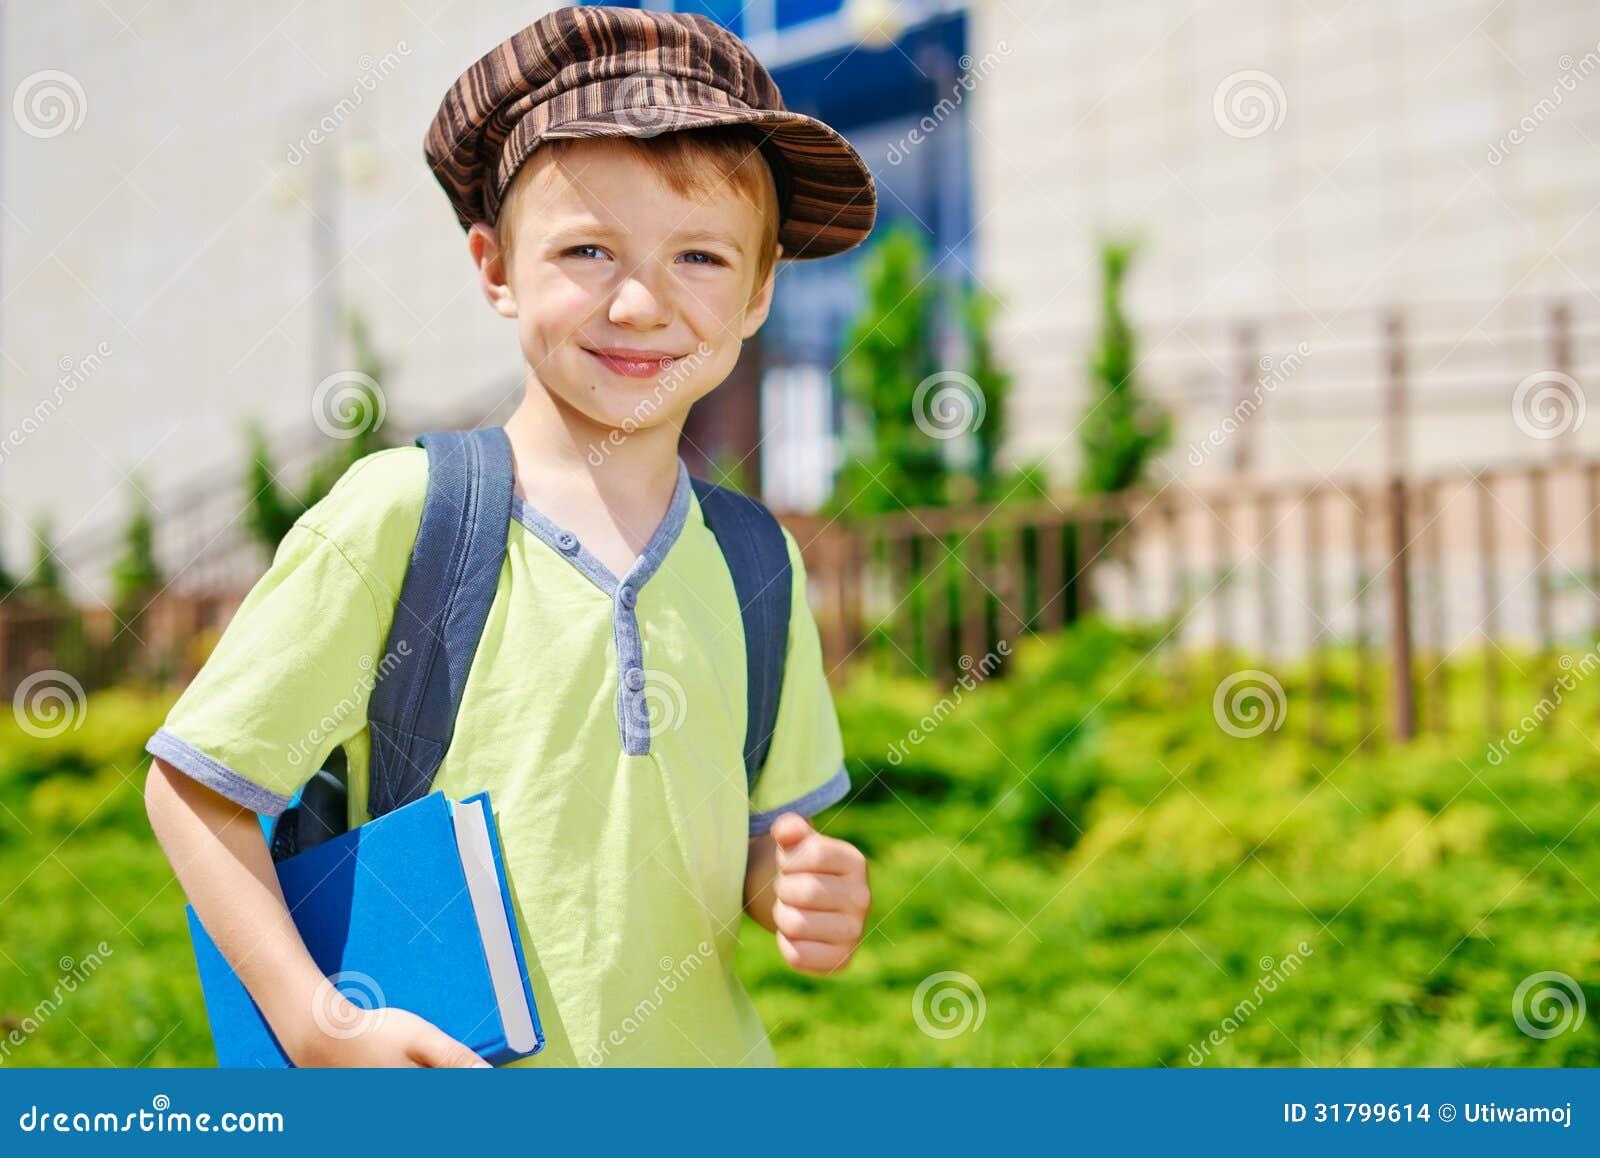 Мальчики пошли. Мальчик идет в школу. Юный мальчик идет. Парень идет в школу. Мужик идет в школу.